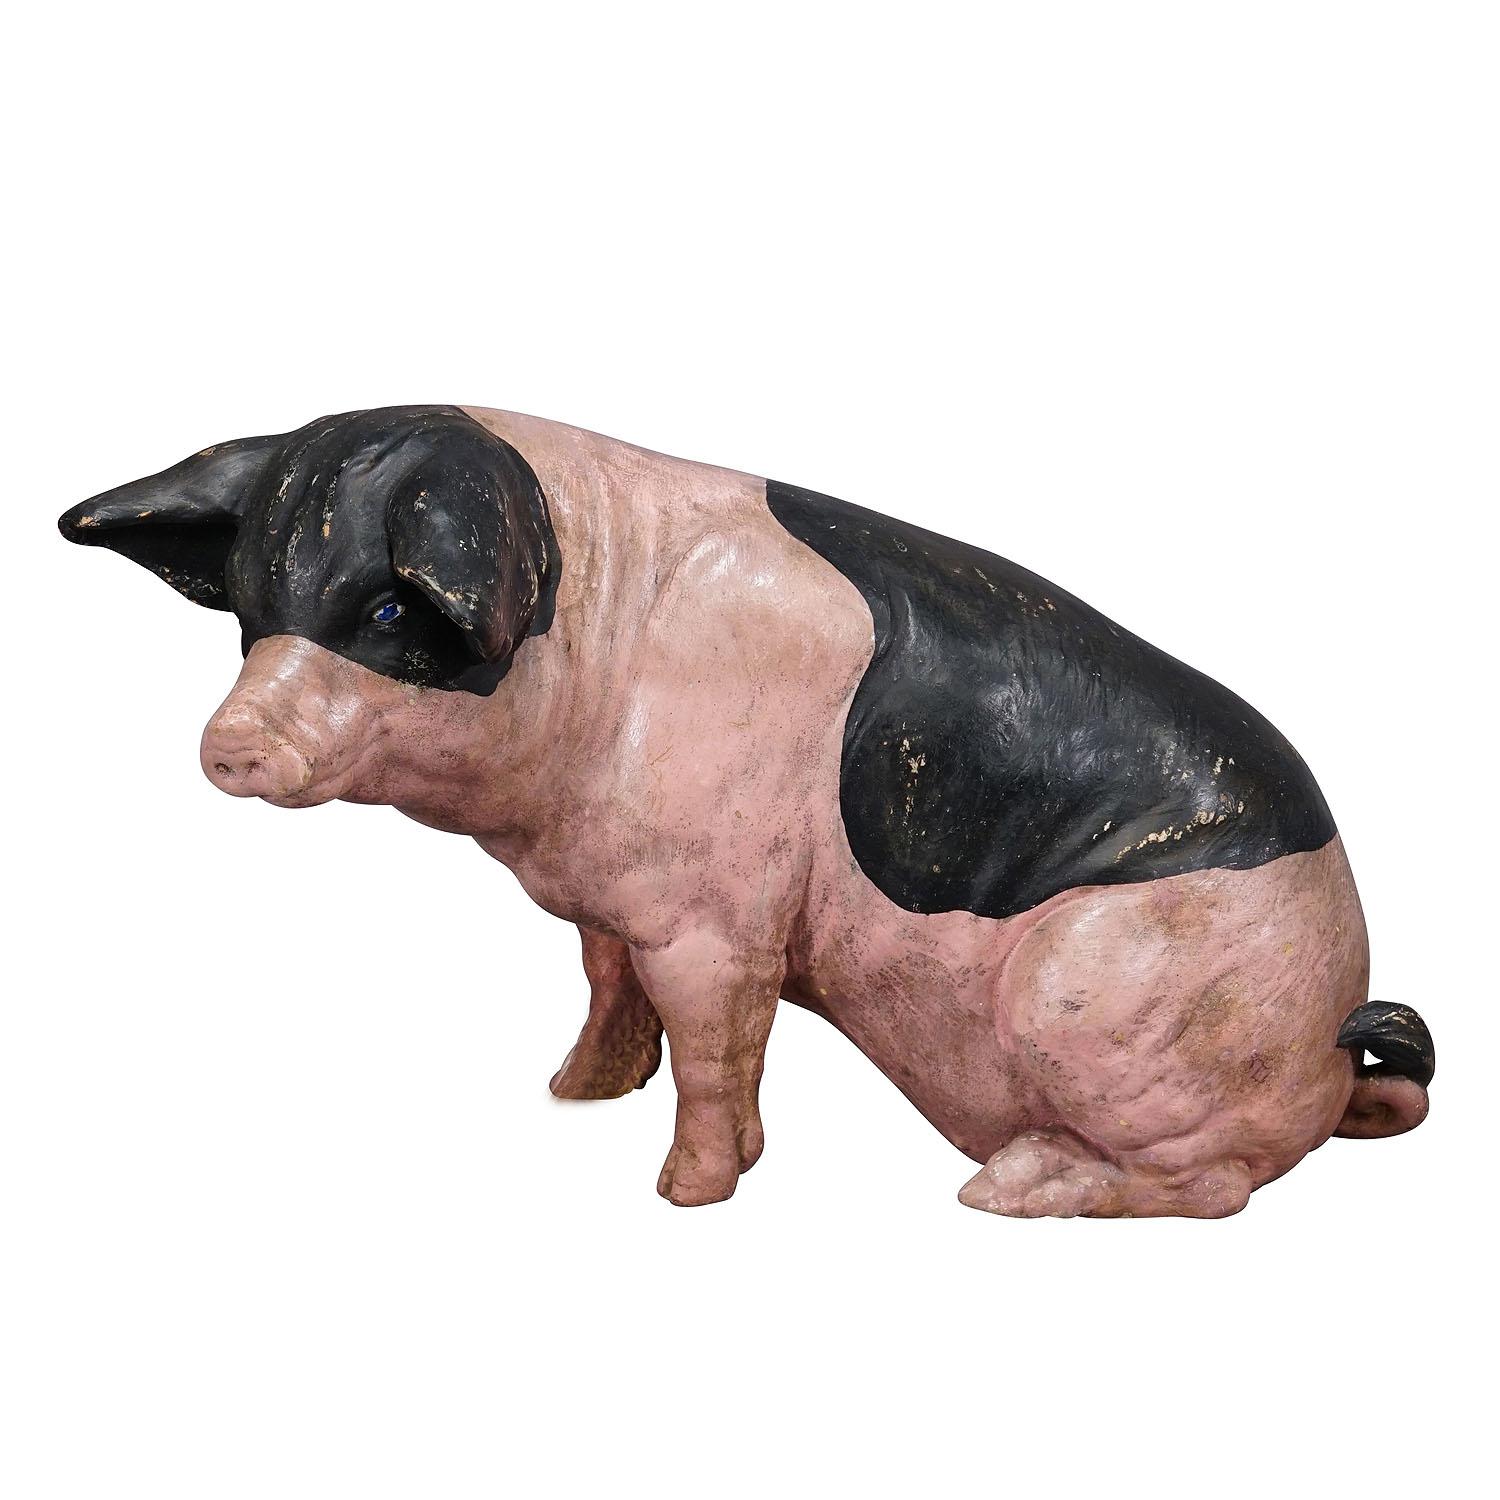 Cochon de campagne souabe en terre cuite des années 1930

Statue vintage d'un cochon de pays hallic souabe. Il a été utilisé comme décoration de vitrine dans une boucherie allemande. La statue est en terre cuite et a probablement été fabriquée par